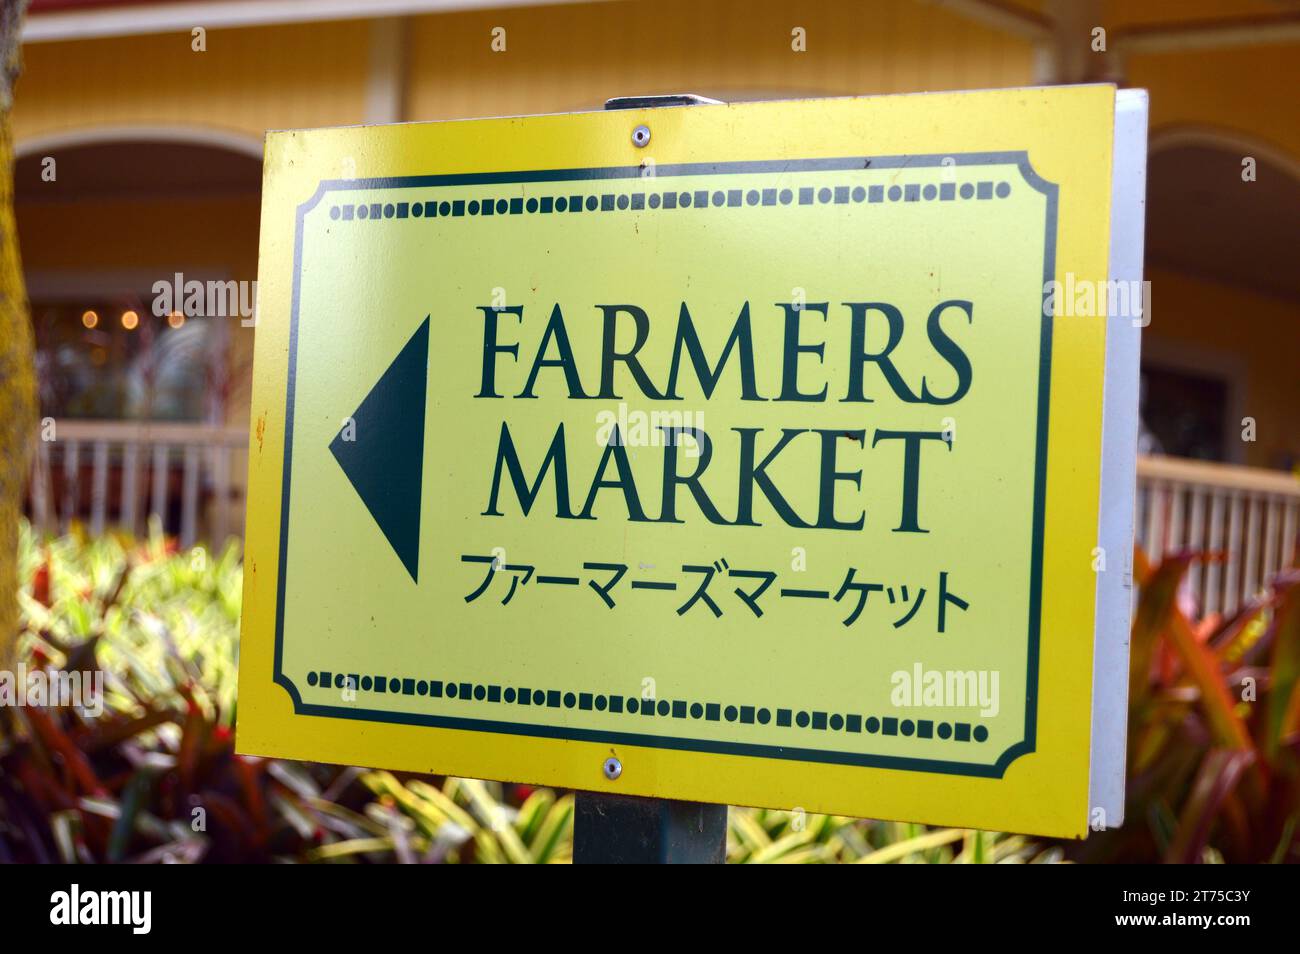 Un panneau en anglais et en japonais pointe les visiteurs vers un marché de fermiers à Hawaï Banque D'Images